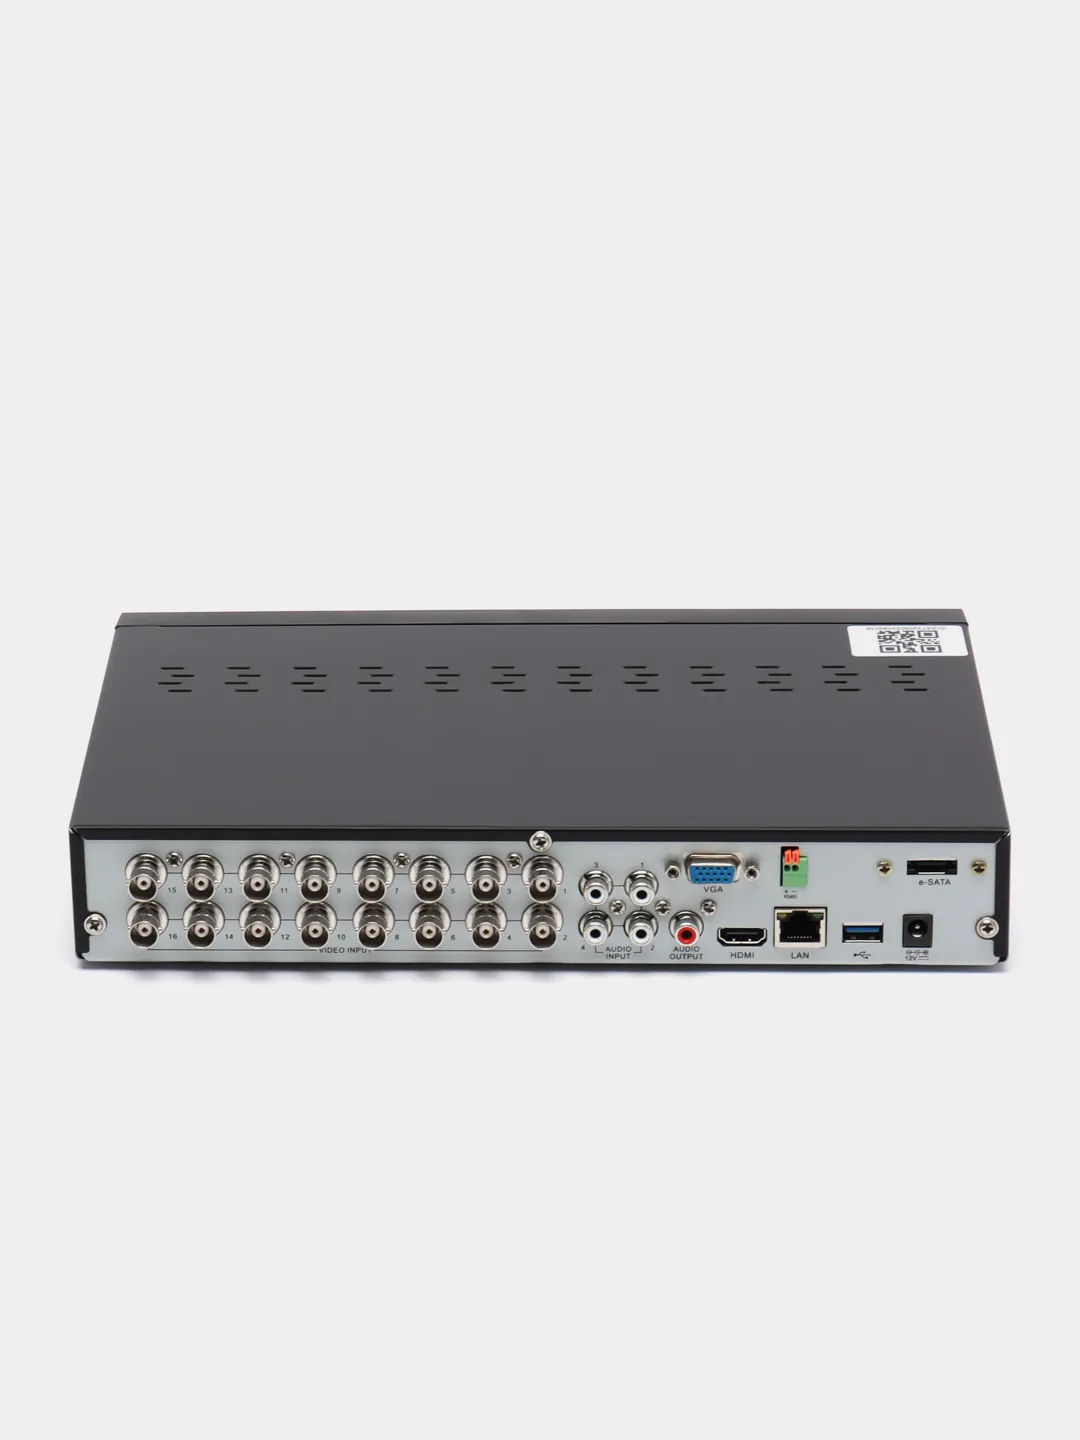 SVR-6110n v3.0 видеорегистратор гибридный. Подключение регистратора гибрид Эльбрус. Видеорегистратор 16 ти канальный